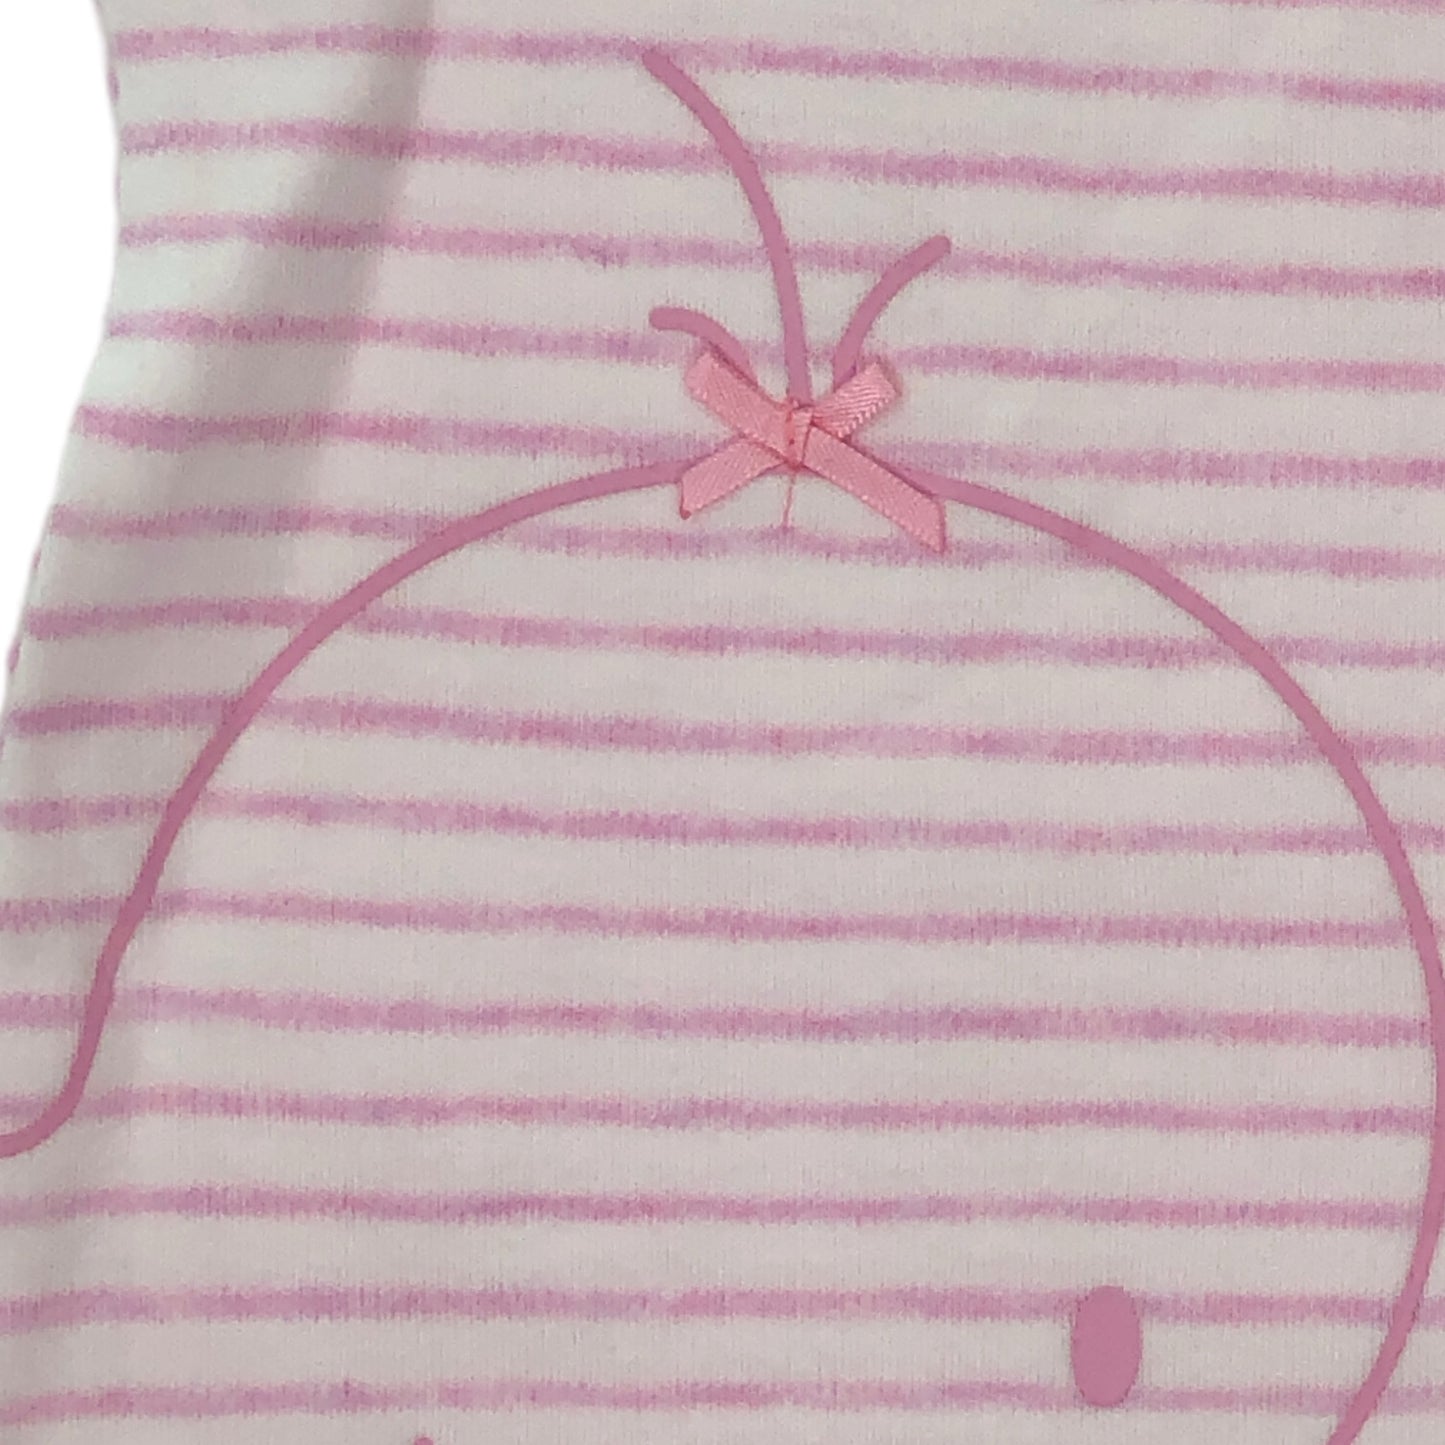 Conjunto de cárdigan, camiseta y pantalón para bebé niña LOSAN